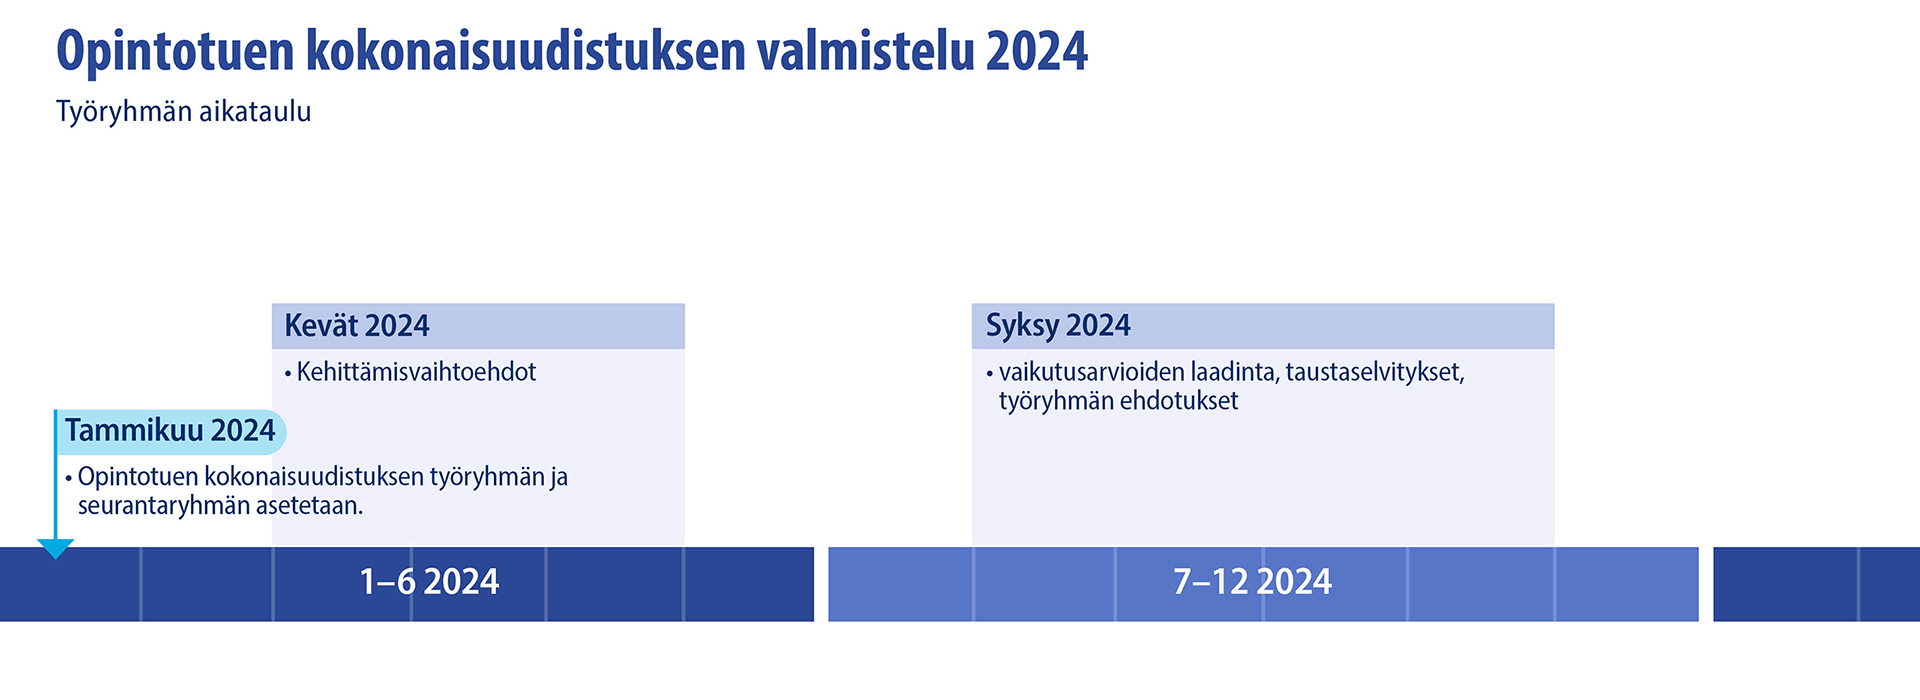 Opintotuen kokonaisuudistuksen valmistelu vuonna 2024. Keväällä työryhmässä kartoitetaan kehittämisvaihtoehtoja. Syksyllä vuorossa on vaikutusarvioiden laadinta, taustaselvitykset ja työryhmän ehdotukset.